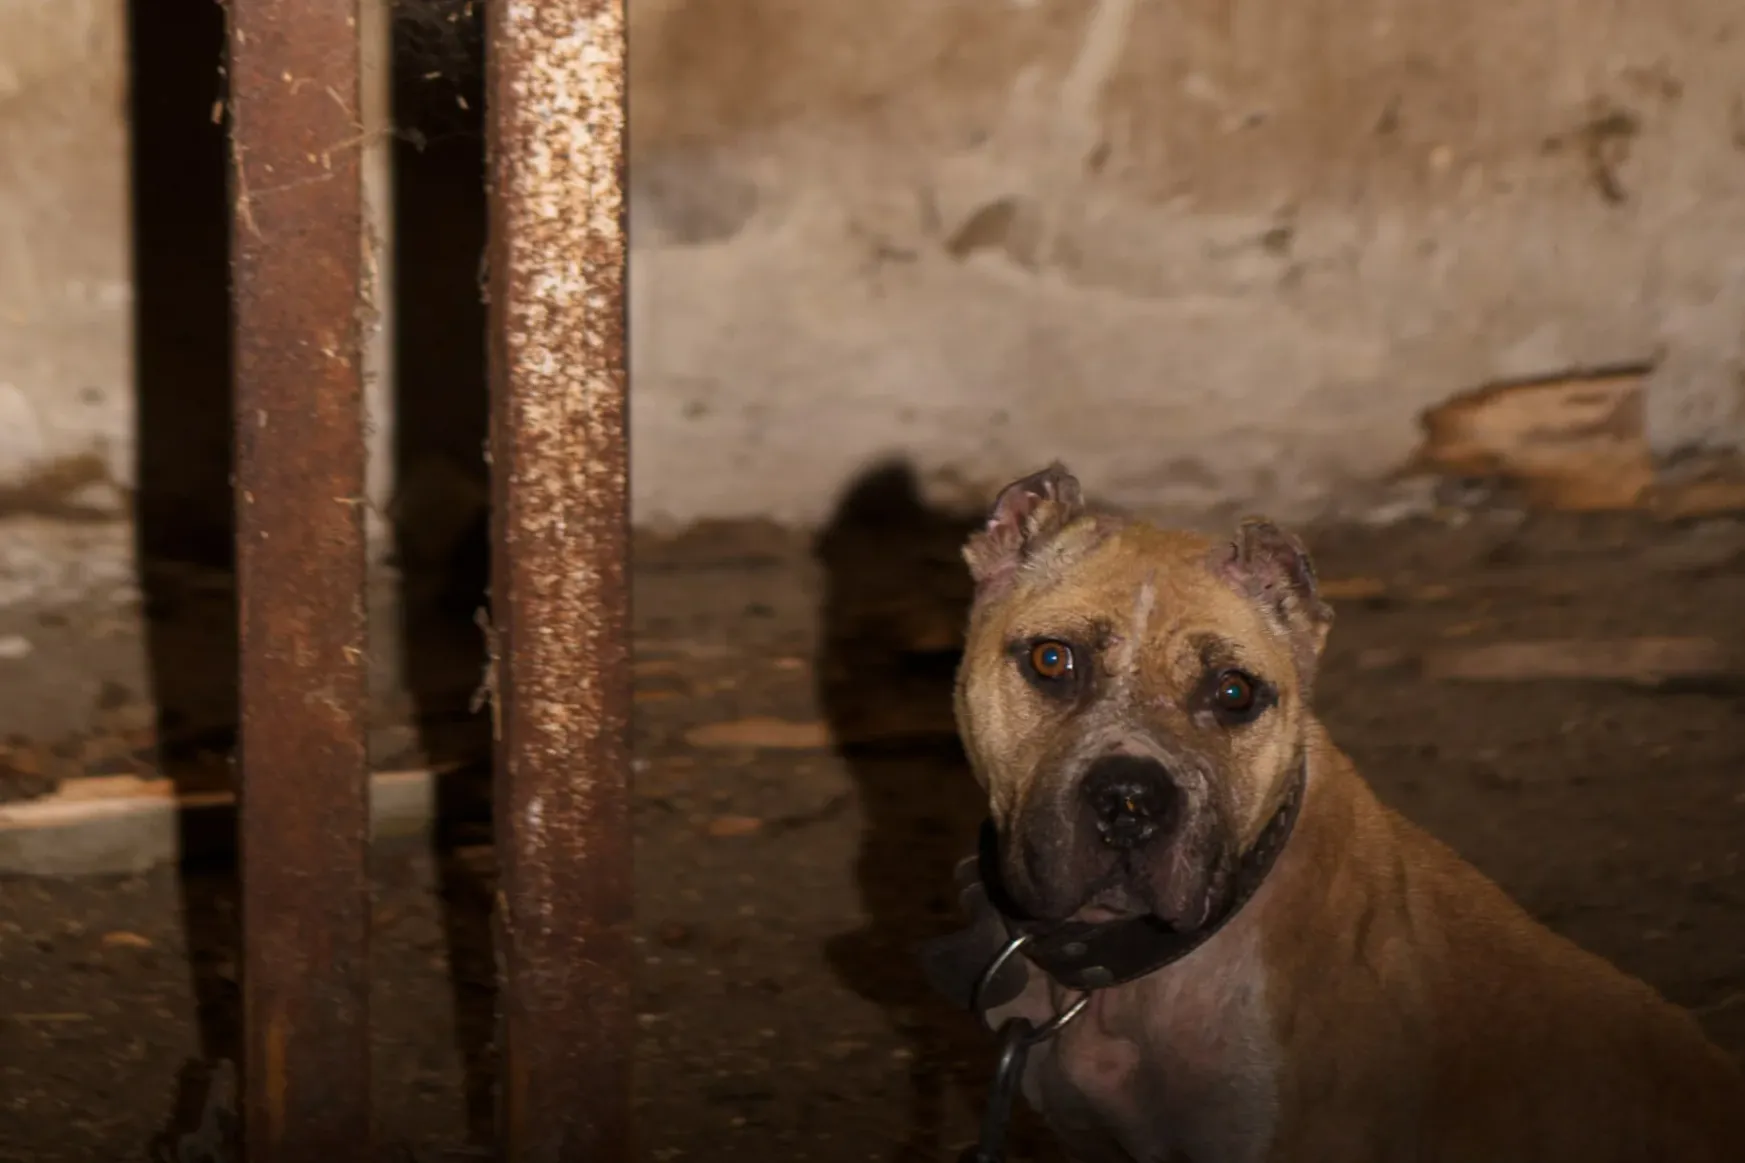 Elaltattak negyven, rendőrség által lefoglalt viadalos kutyát, a civilek hiába küzdöttek a rehabilitációjukért